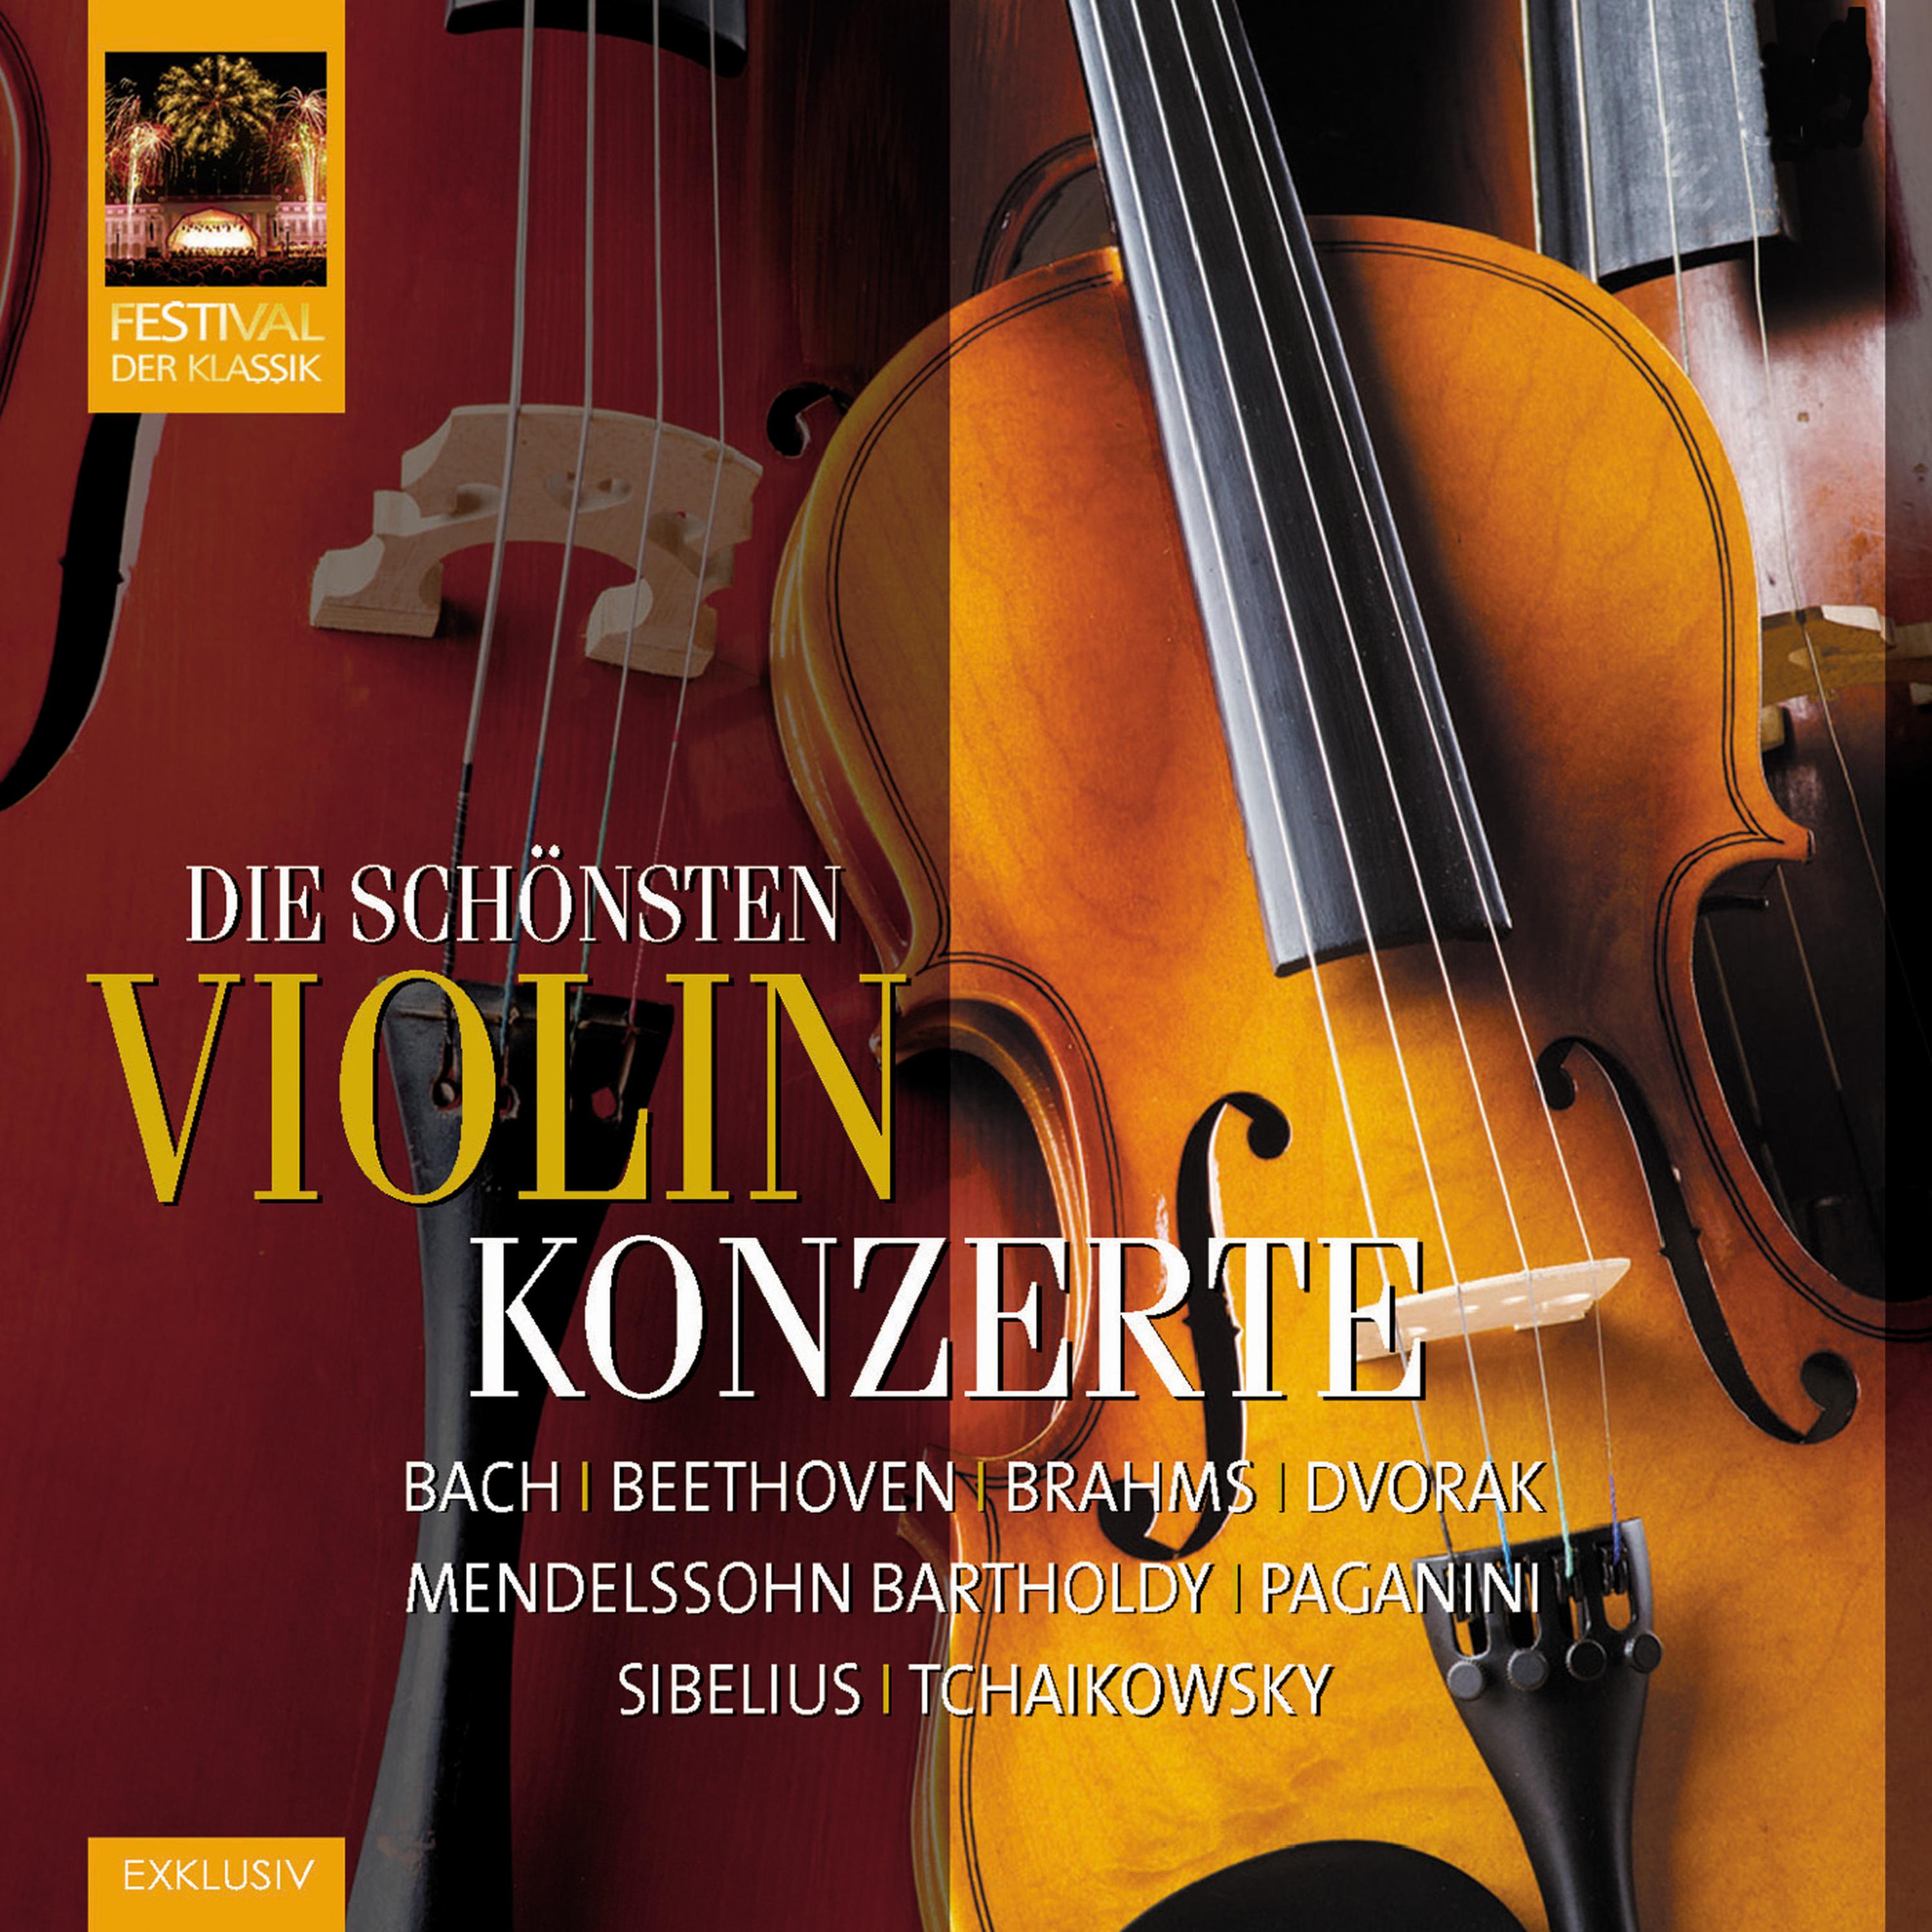 Best Violin Concerts